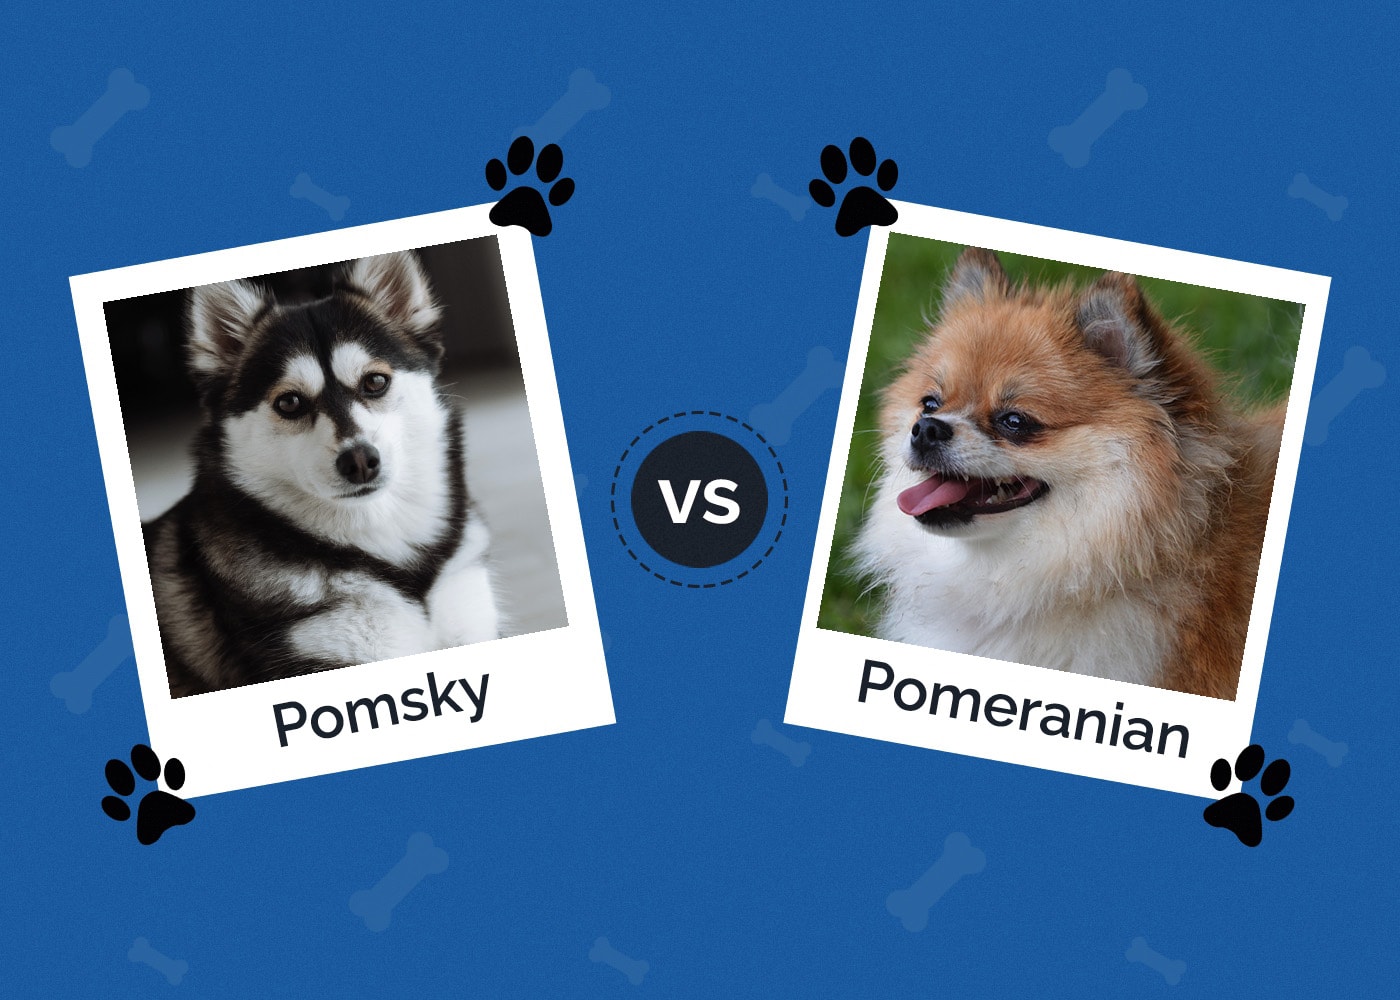 Pomsky vs Pomeranian